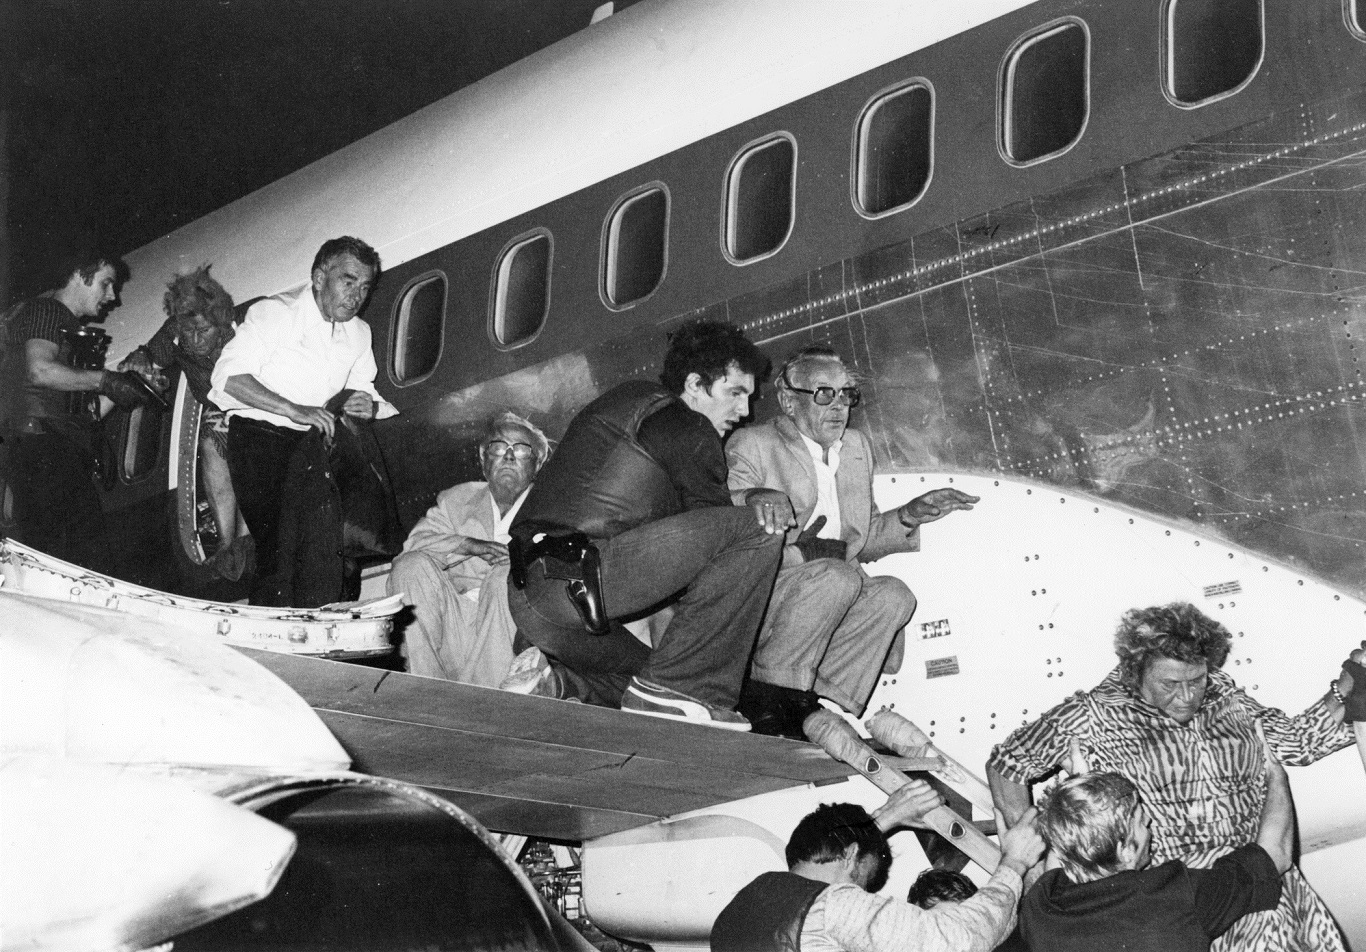 "Operation Feuerzauber" zur Geiselbefreiung aus der 1977 entführten Lufthansa "Landshut"